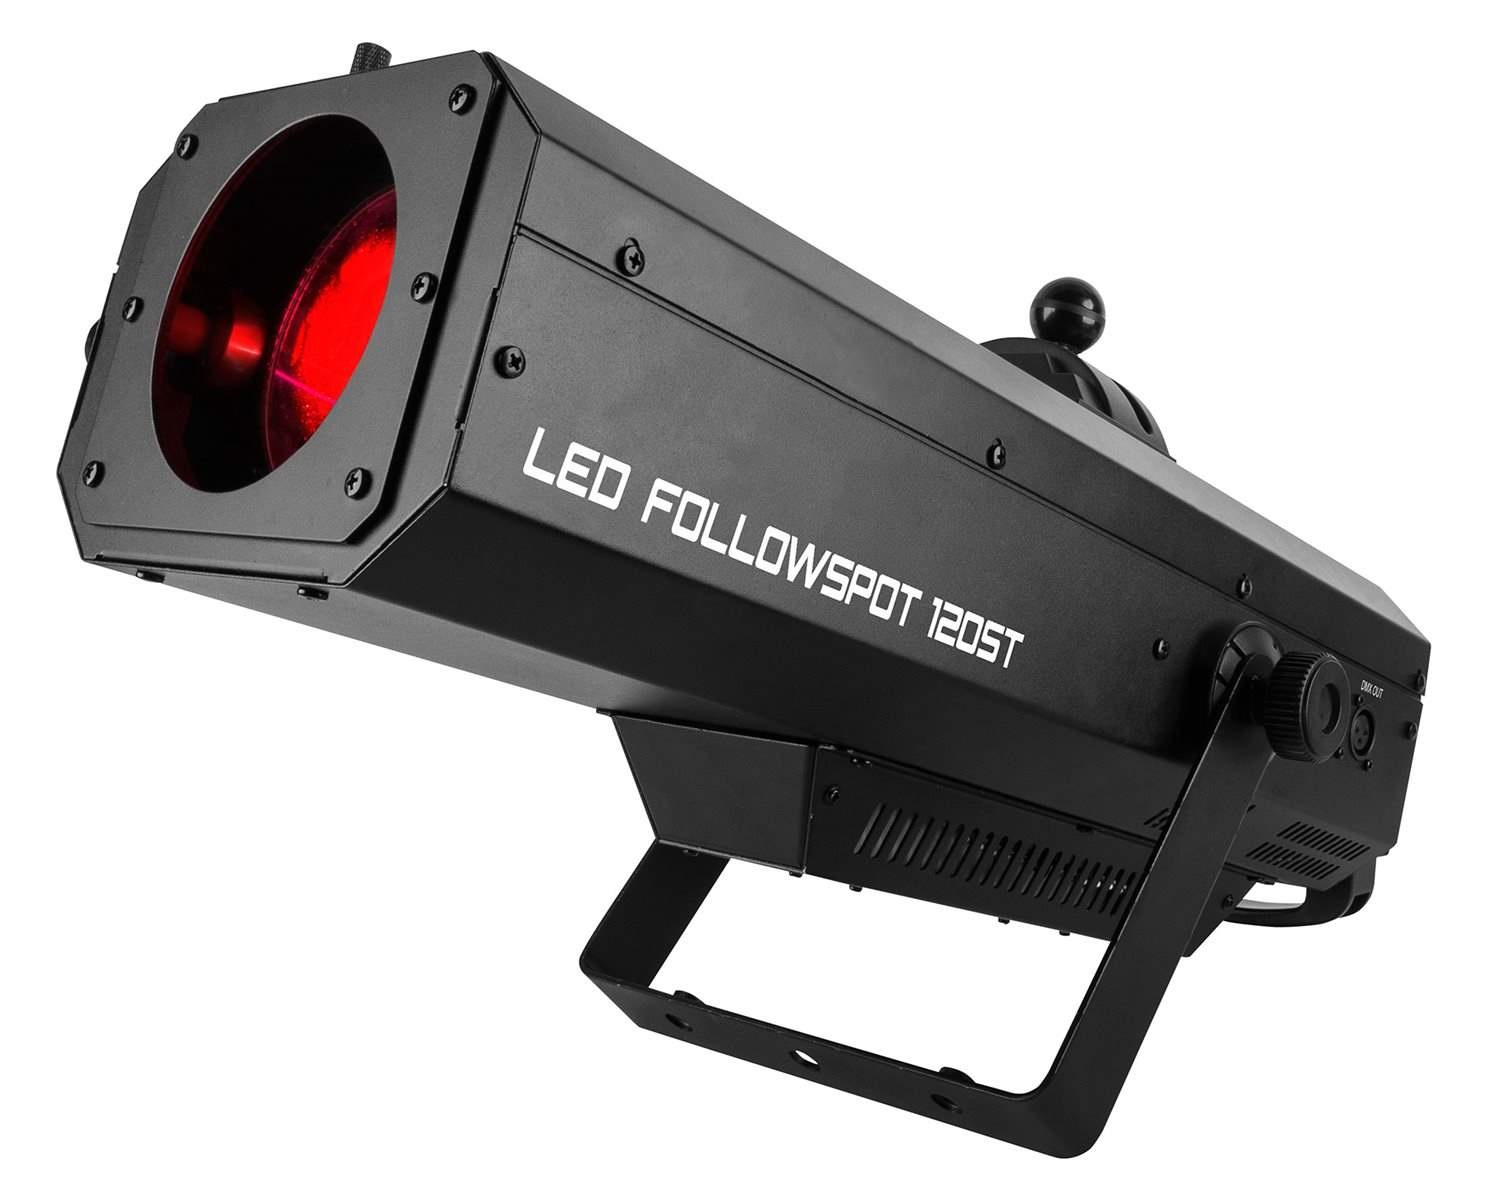 Chauvet LED Followspot 120ST светодиодный следящий прожектор